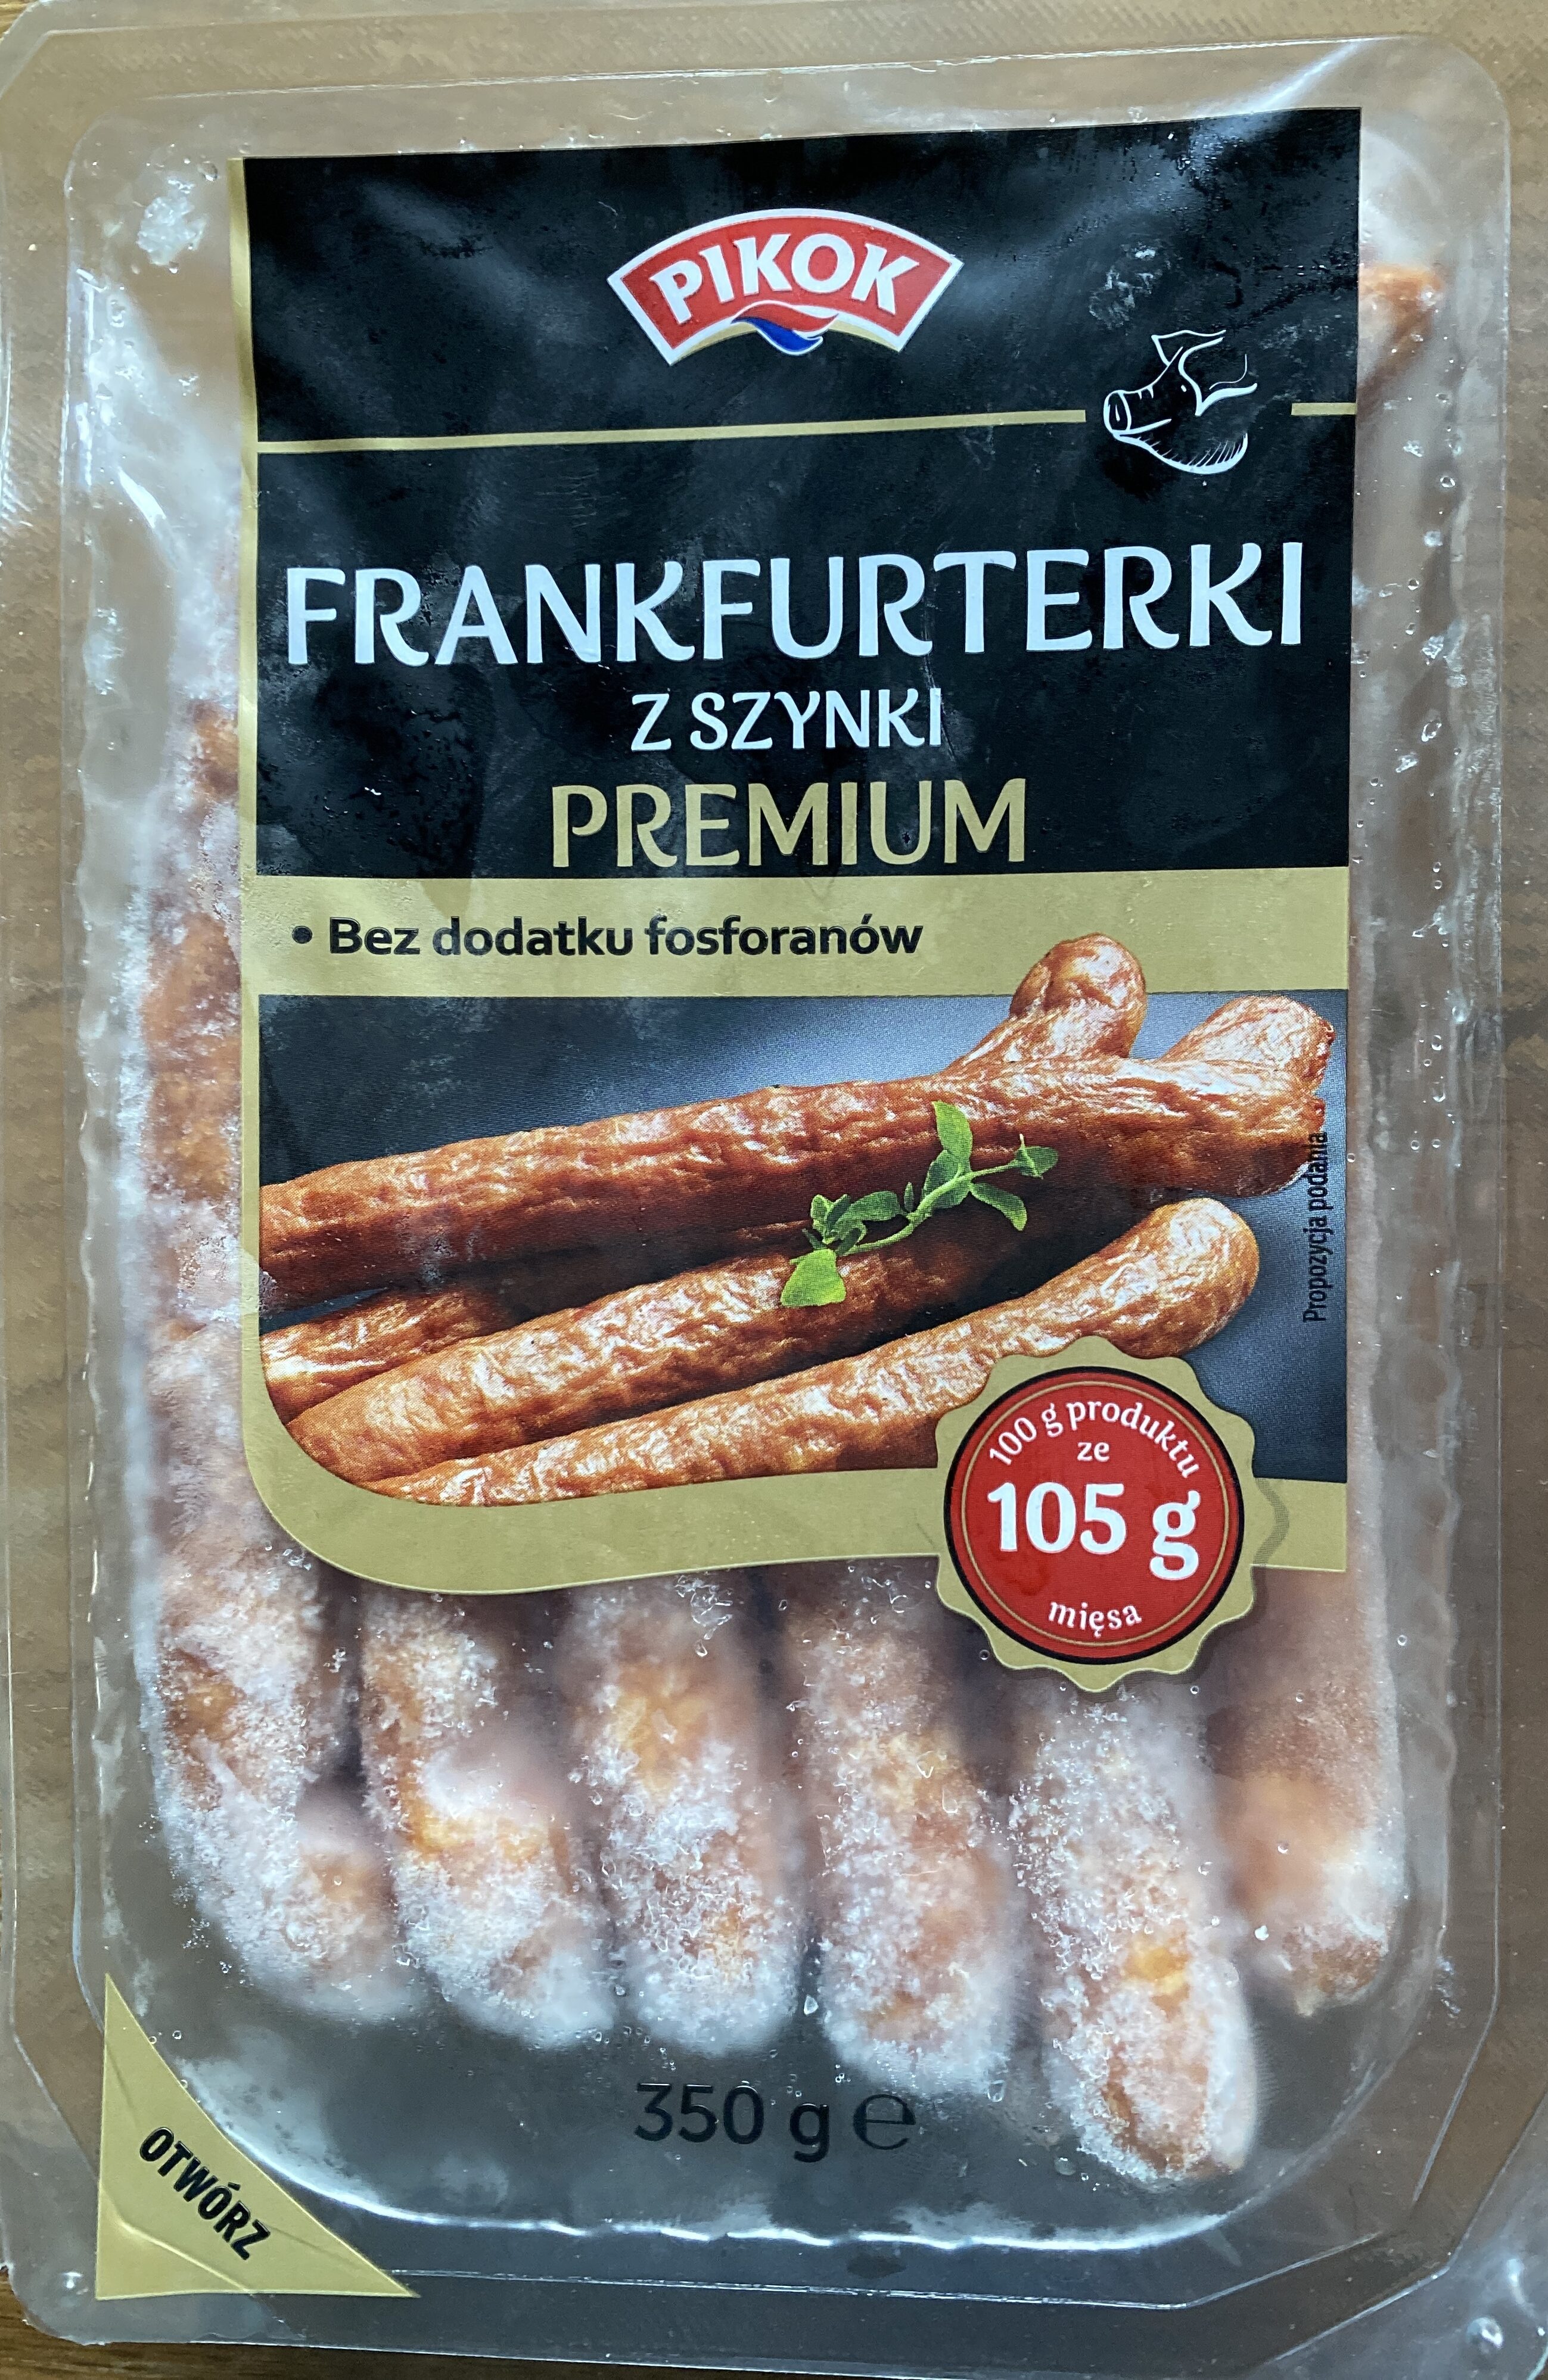 Frankfurterki z szynki wieprzowej - Product - pl